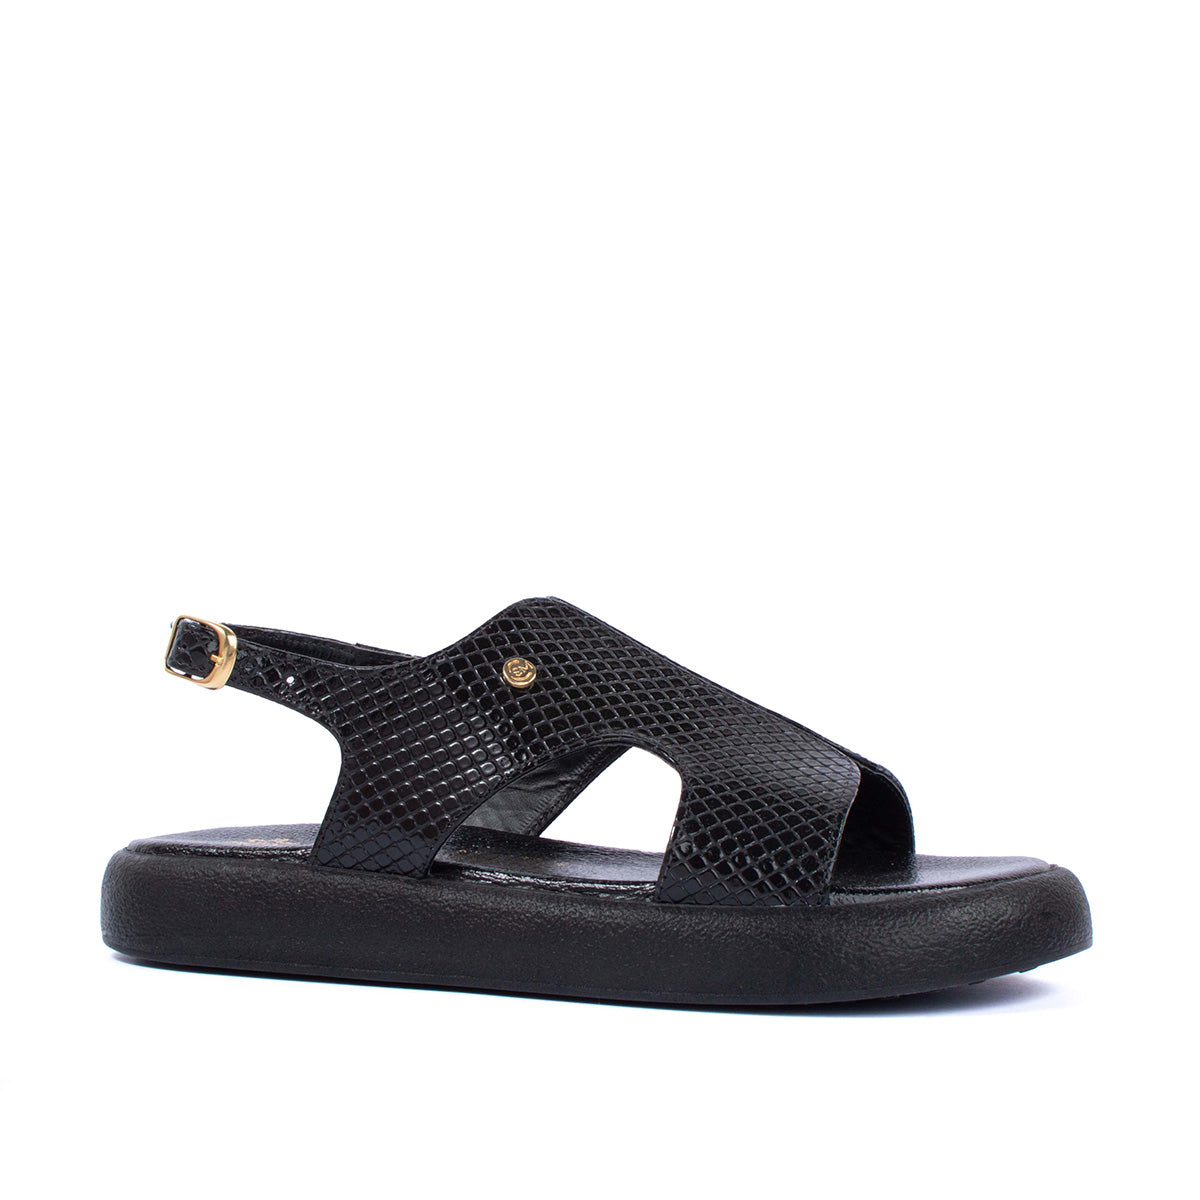 Sandalias planas en cuero color negro con textura tipo croco 104074